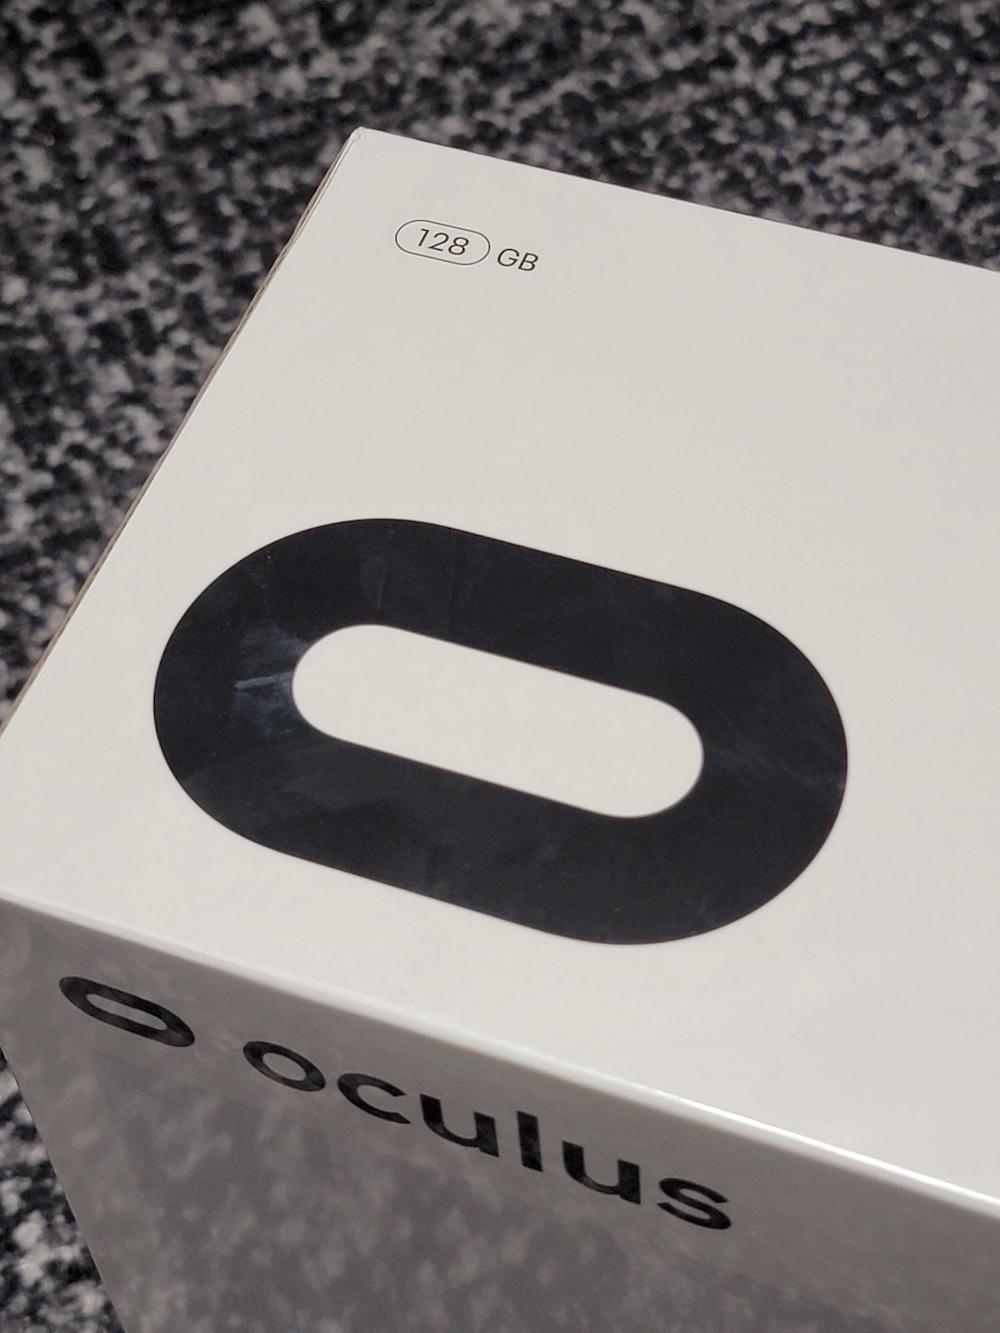 Oculus_Quest_128_GB_Version